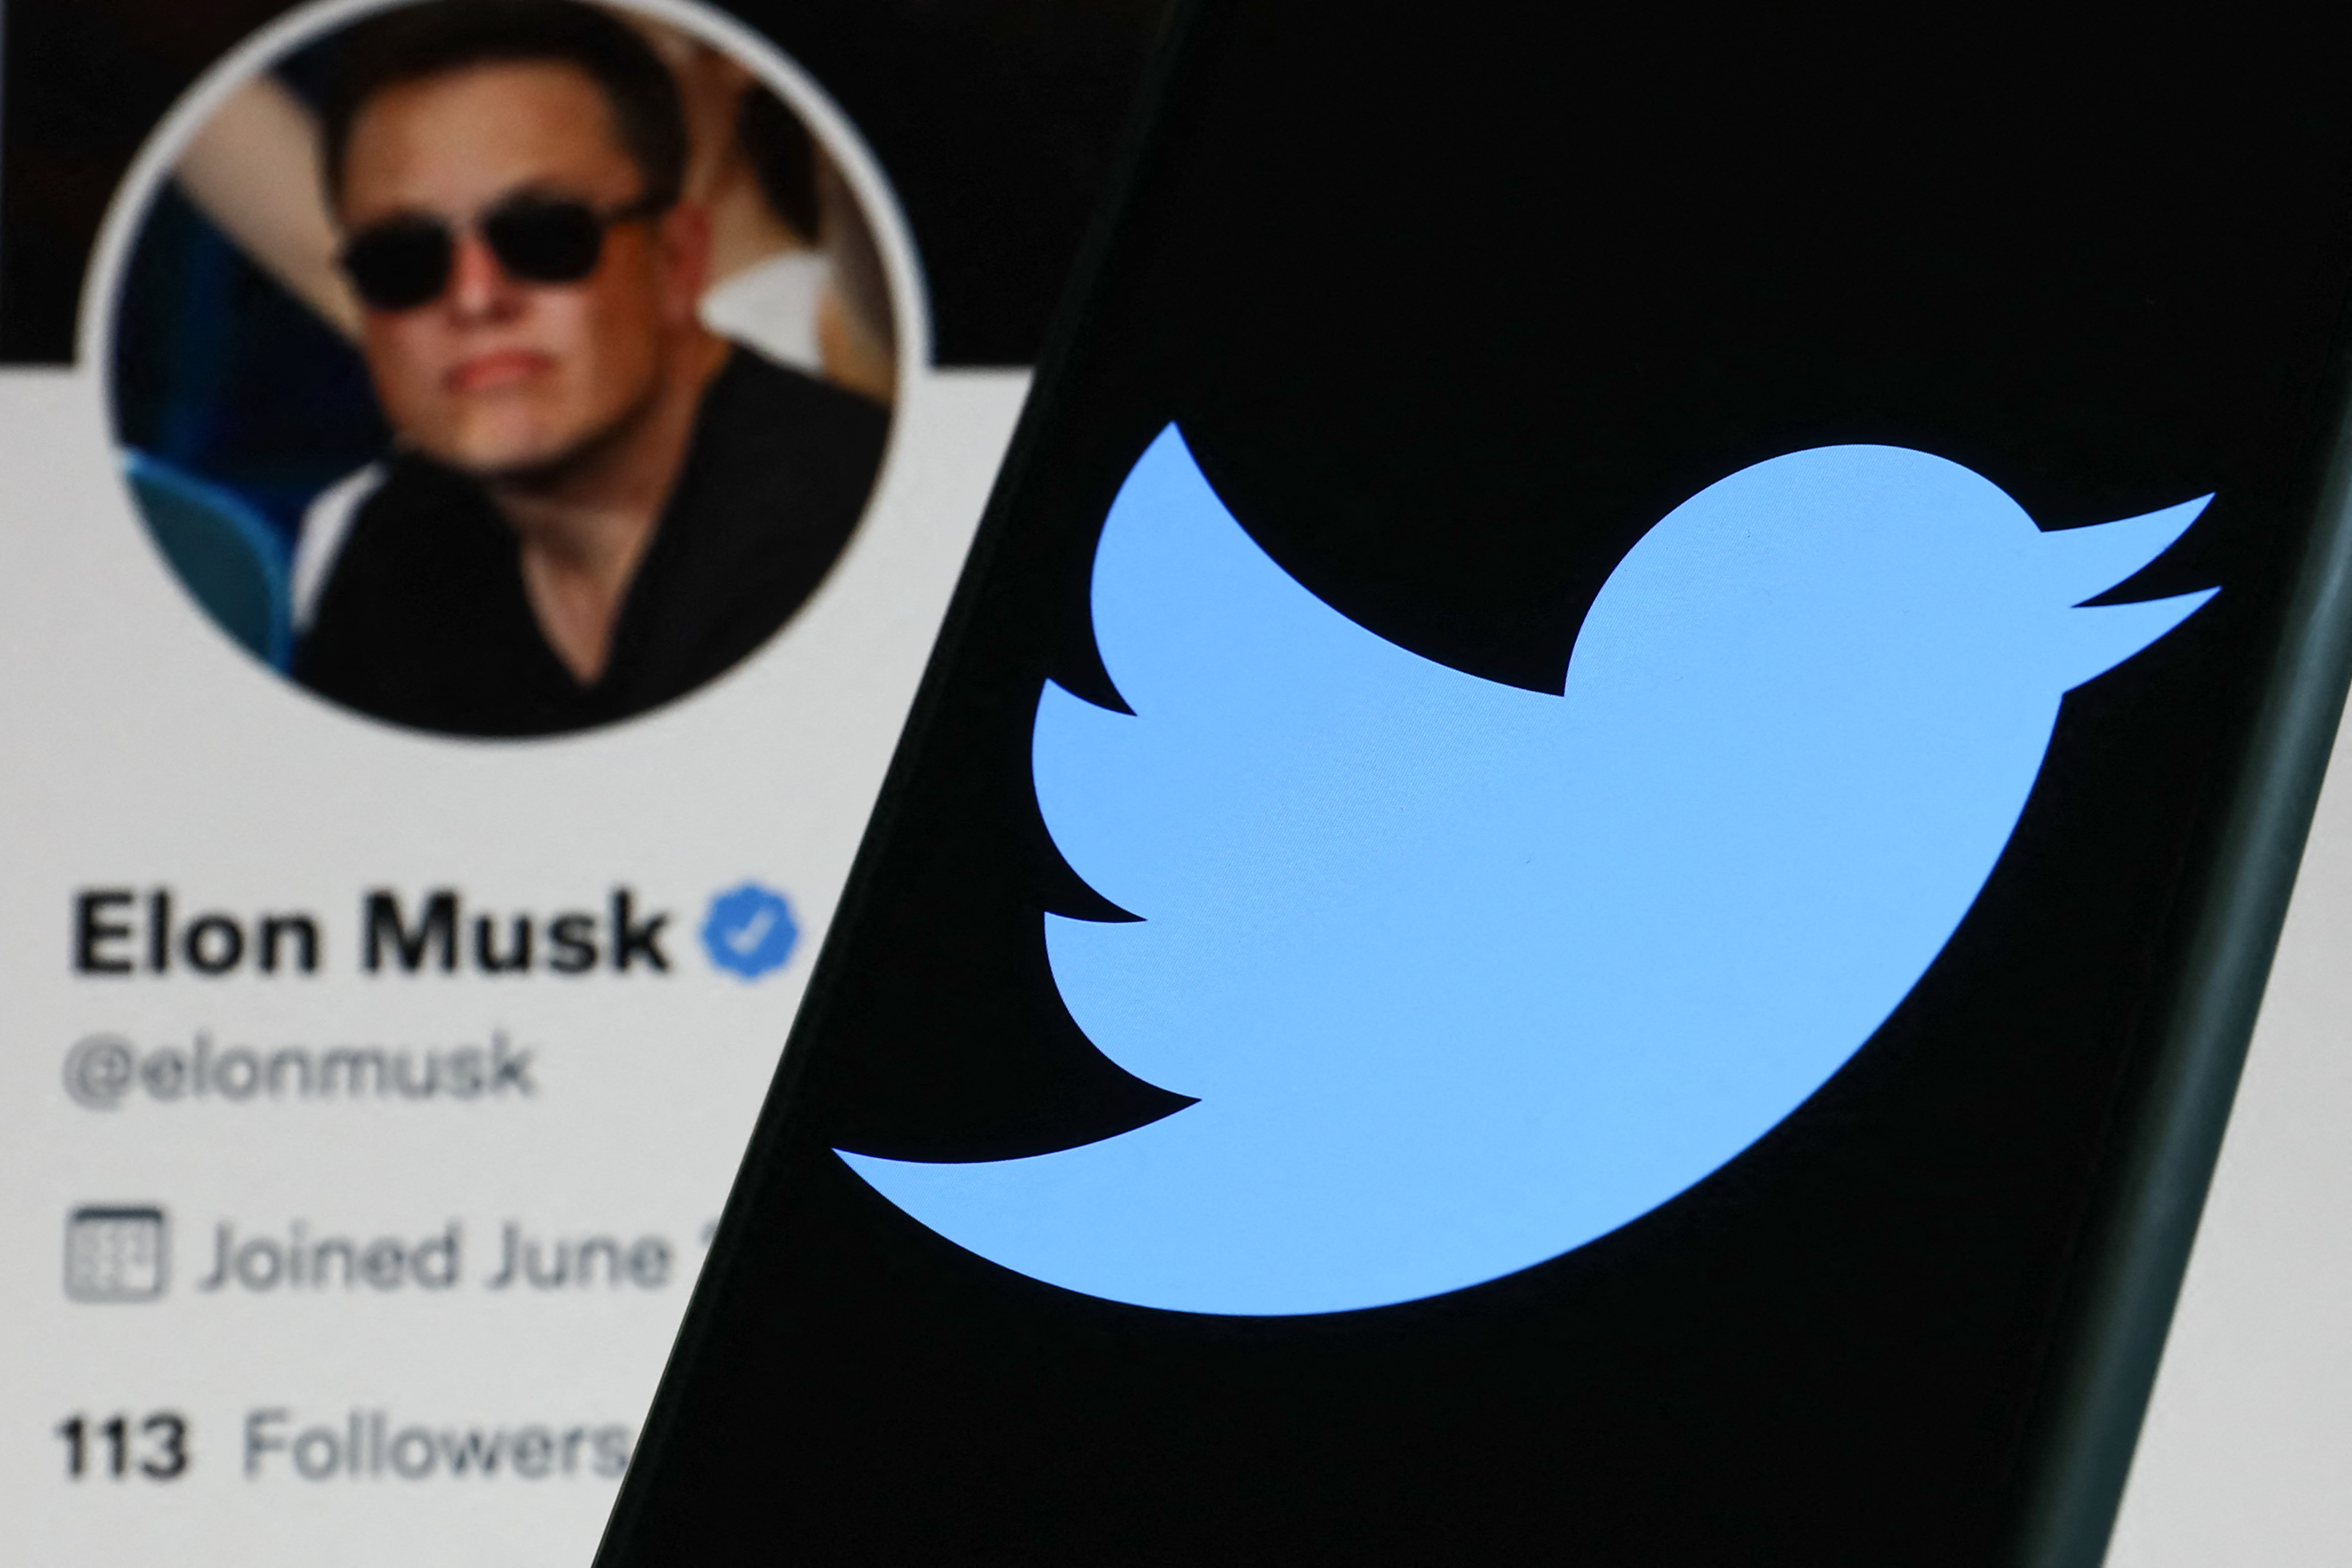 A Twitter kész elfogadni Elon Musk 44 milliárd dolláros ajánlatát